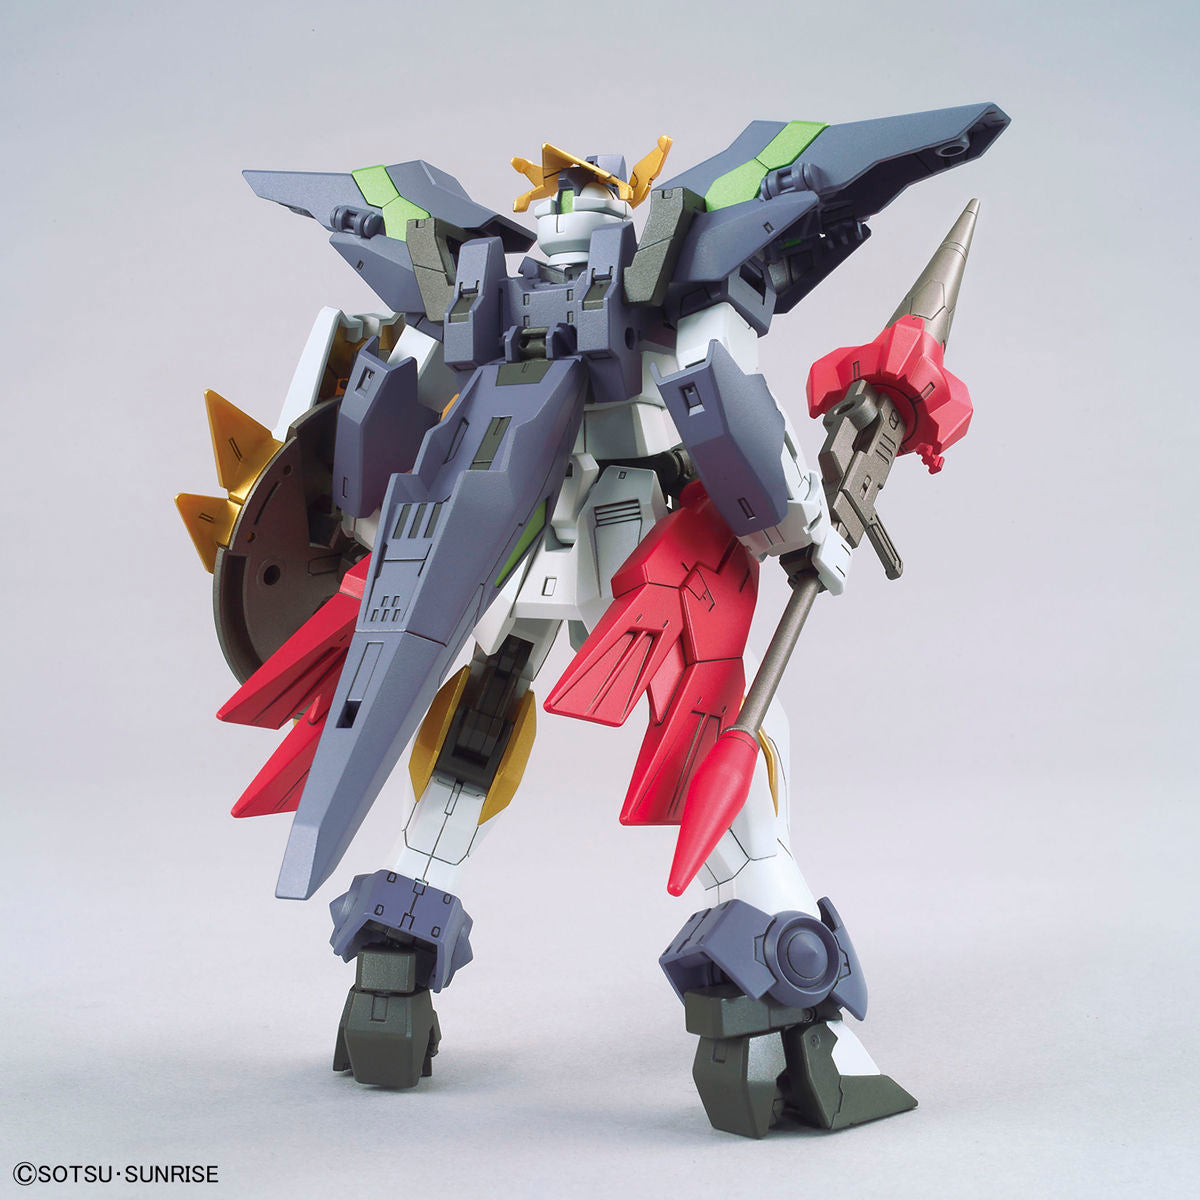 HGBD:R Gundam Aegis Knight